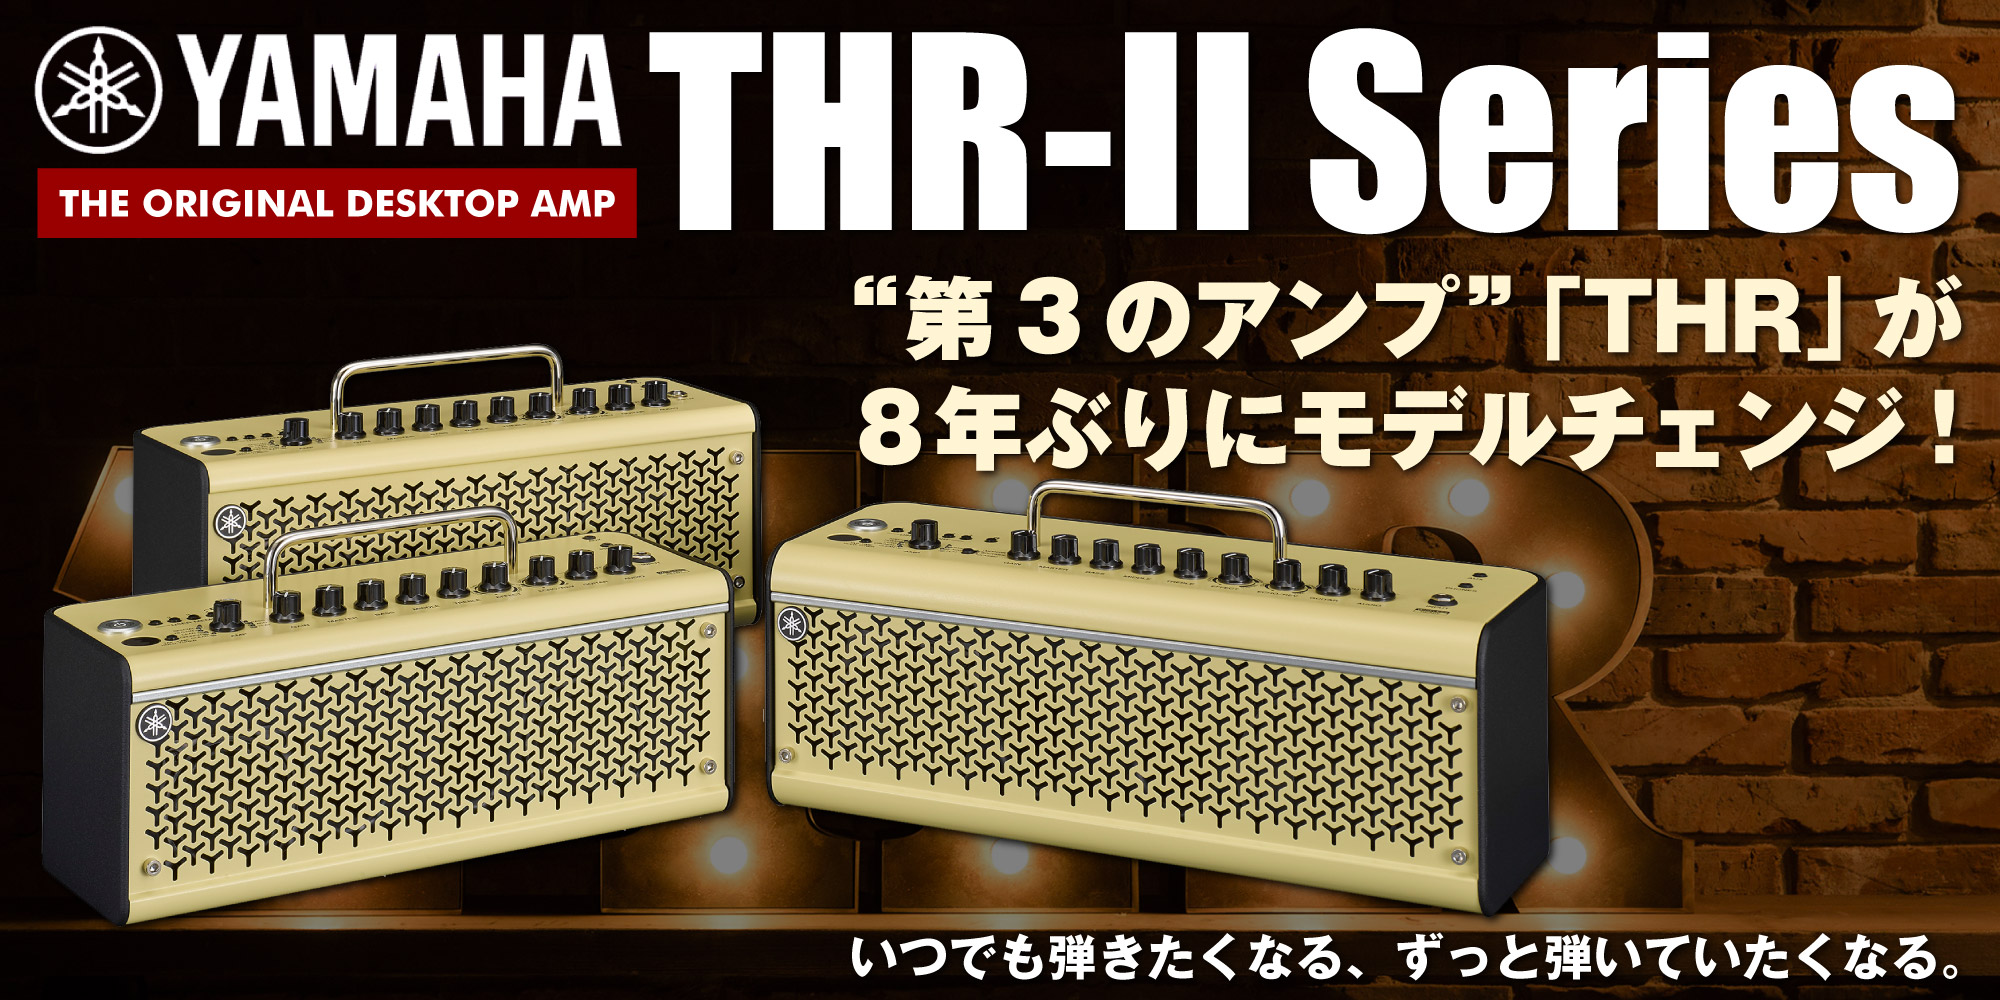 Yamaha】8年ぶりのモデルチェンジ！現代のギタリストのニーズにマッチする新たな機能を搭載し次世代のデスクトップアンプとしてさらに進化した『THR-Ⅱ』シリーズが登場！！  | こちらイケベ新製品情報局